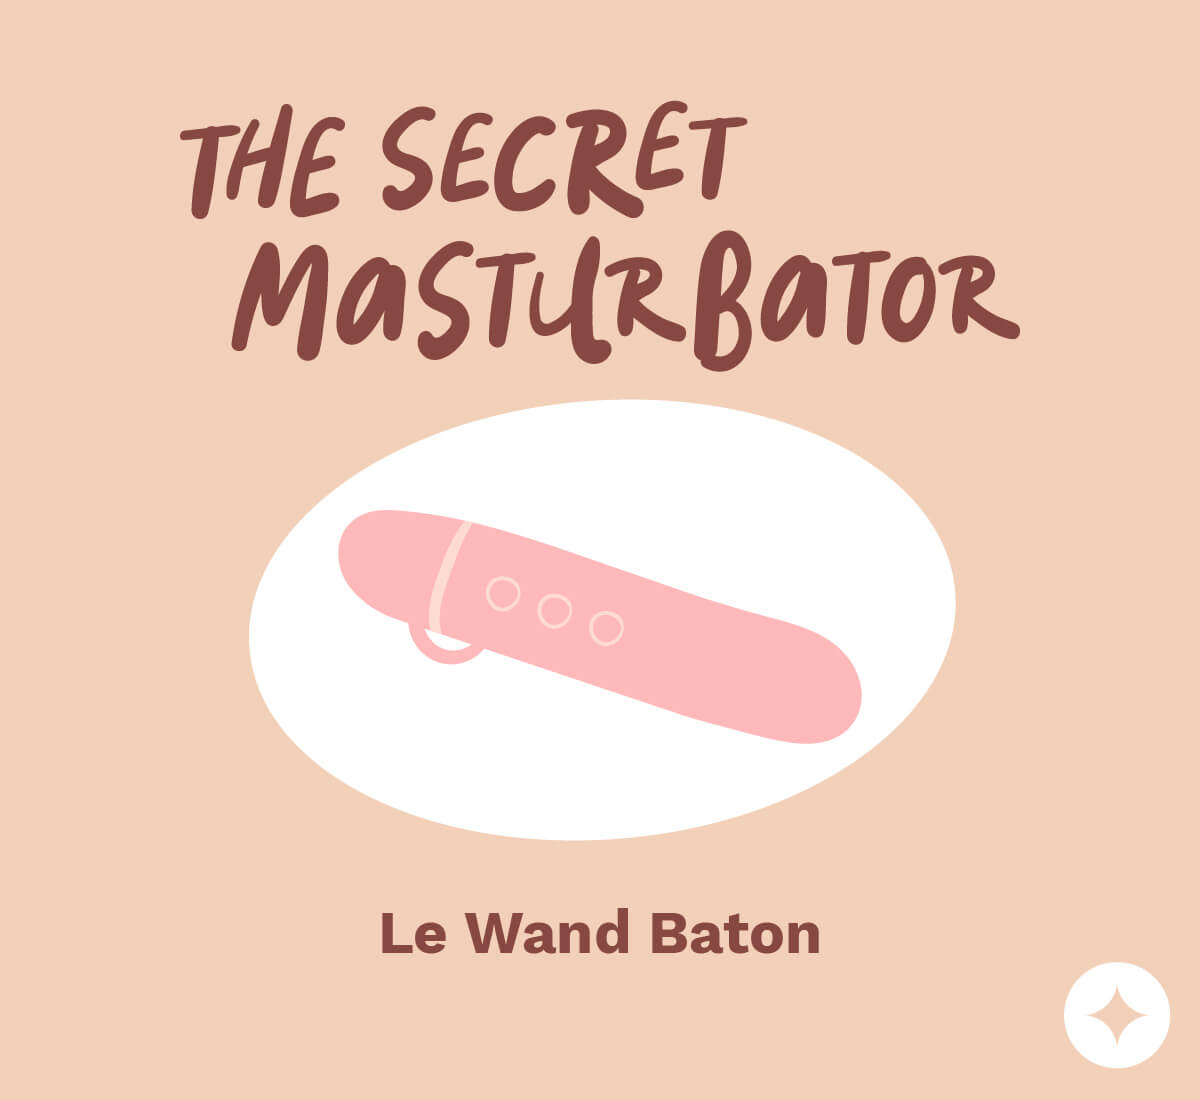 The Secret Masturbator AKA Le Wand Baton